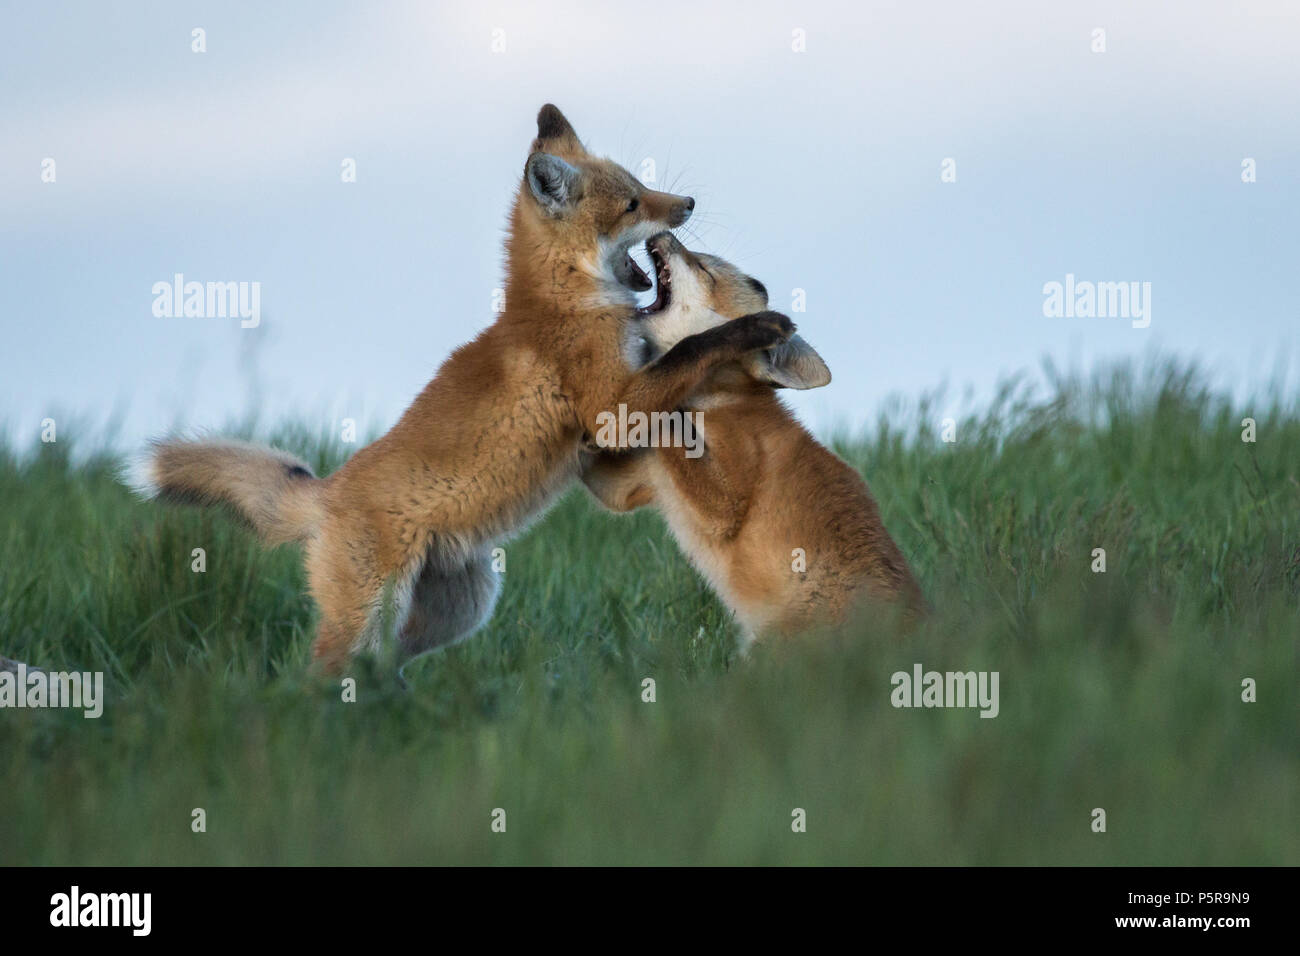 Zwei adorable Fox kits Spielen kämpfen. Stockfoto